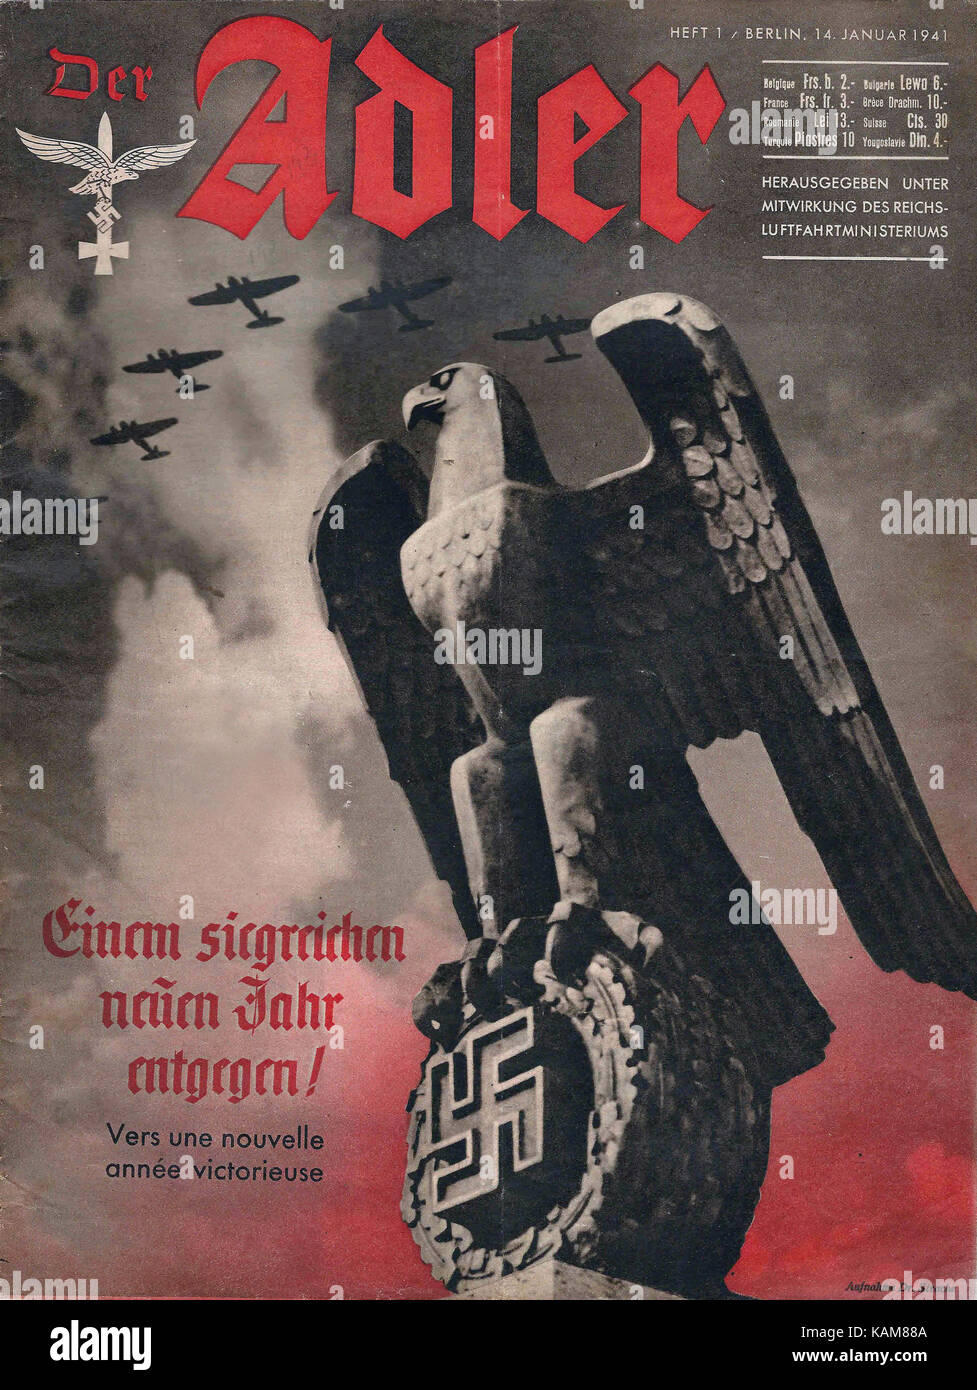 Der Adler - propaganda nazista magazine - Tedesco Francese coperchio edizione - 1941 Foto Stock